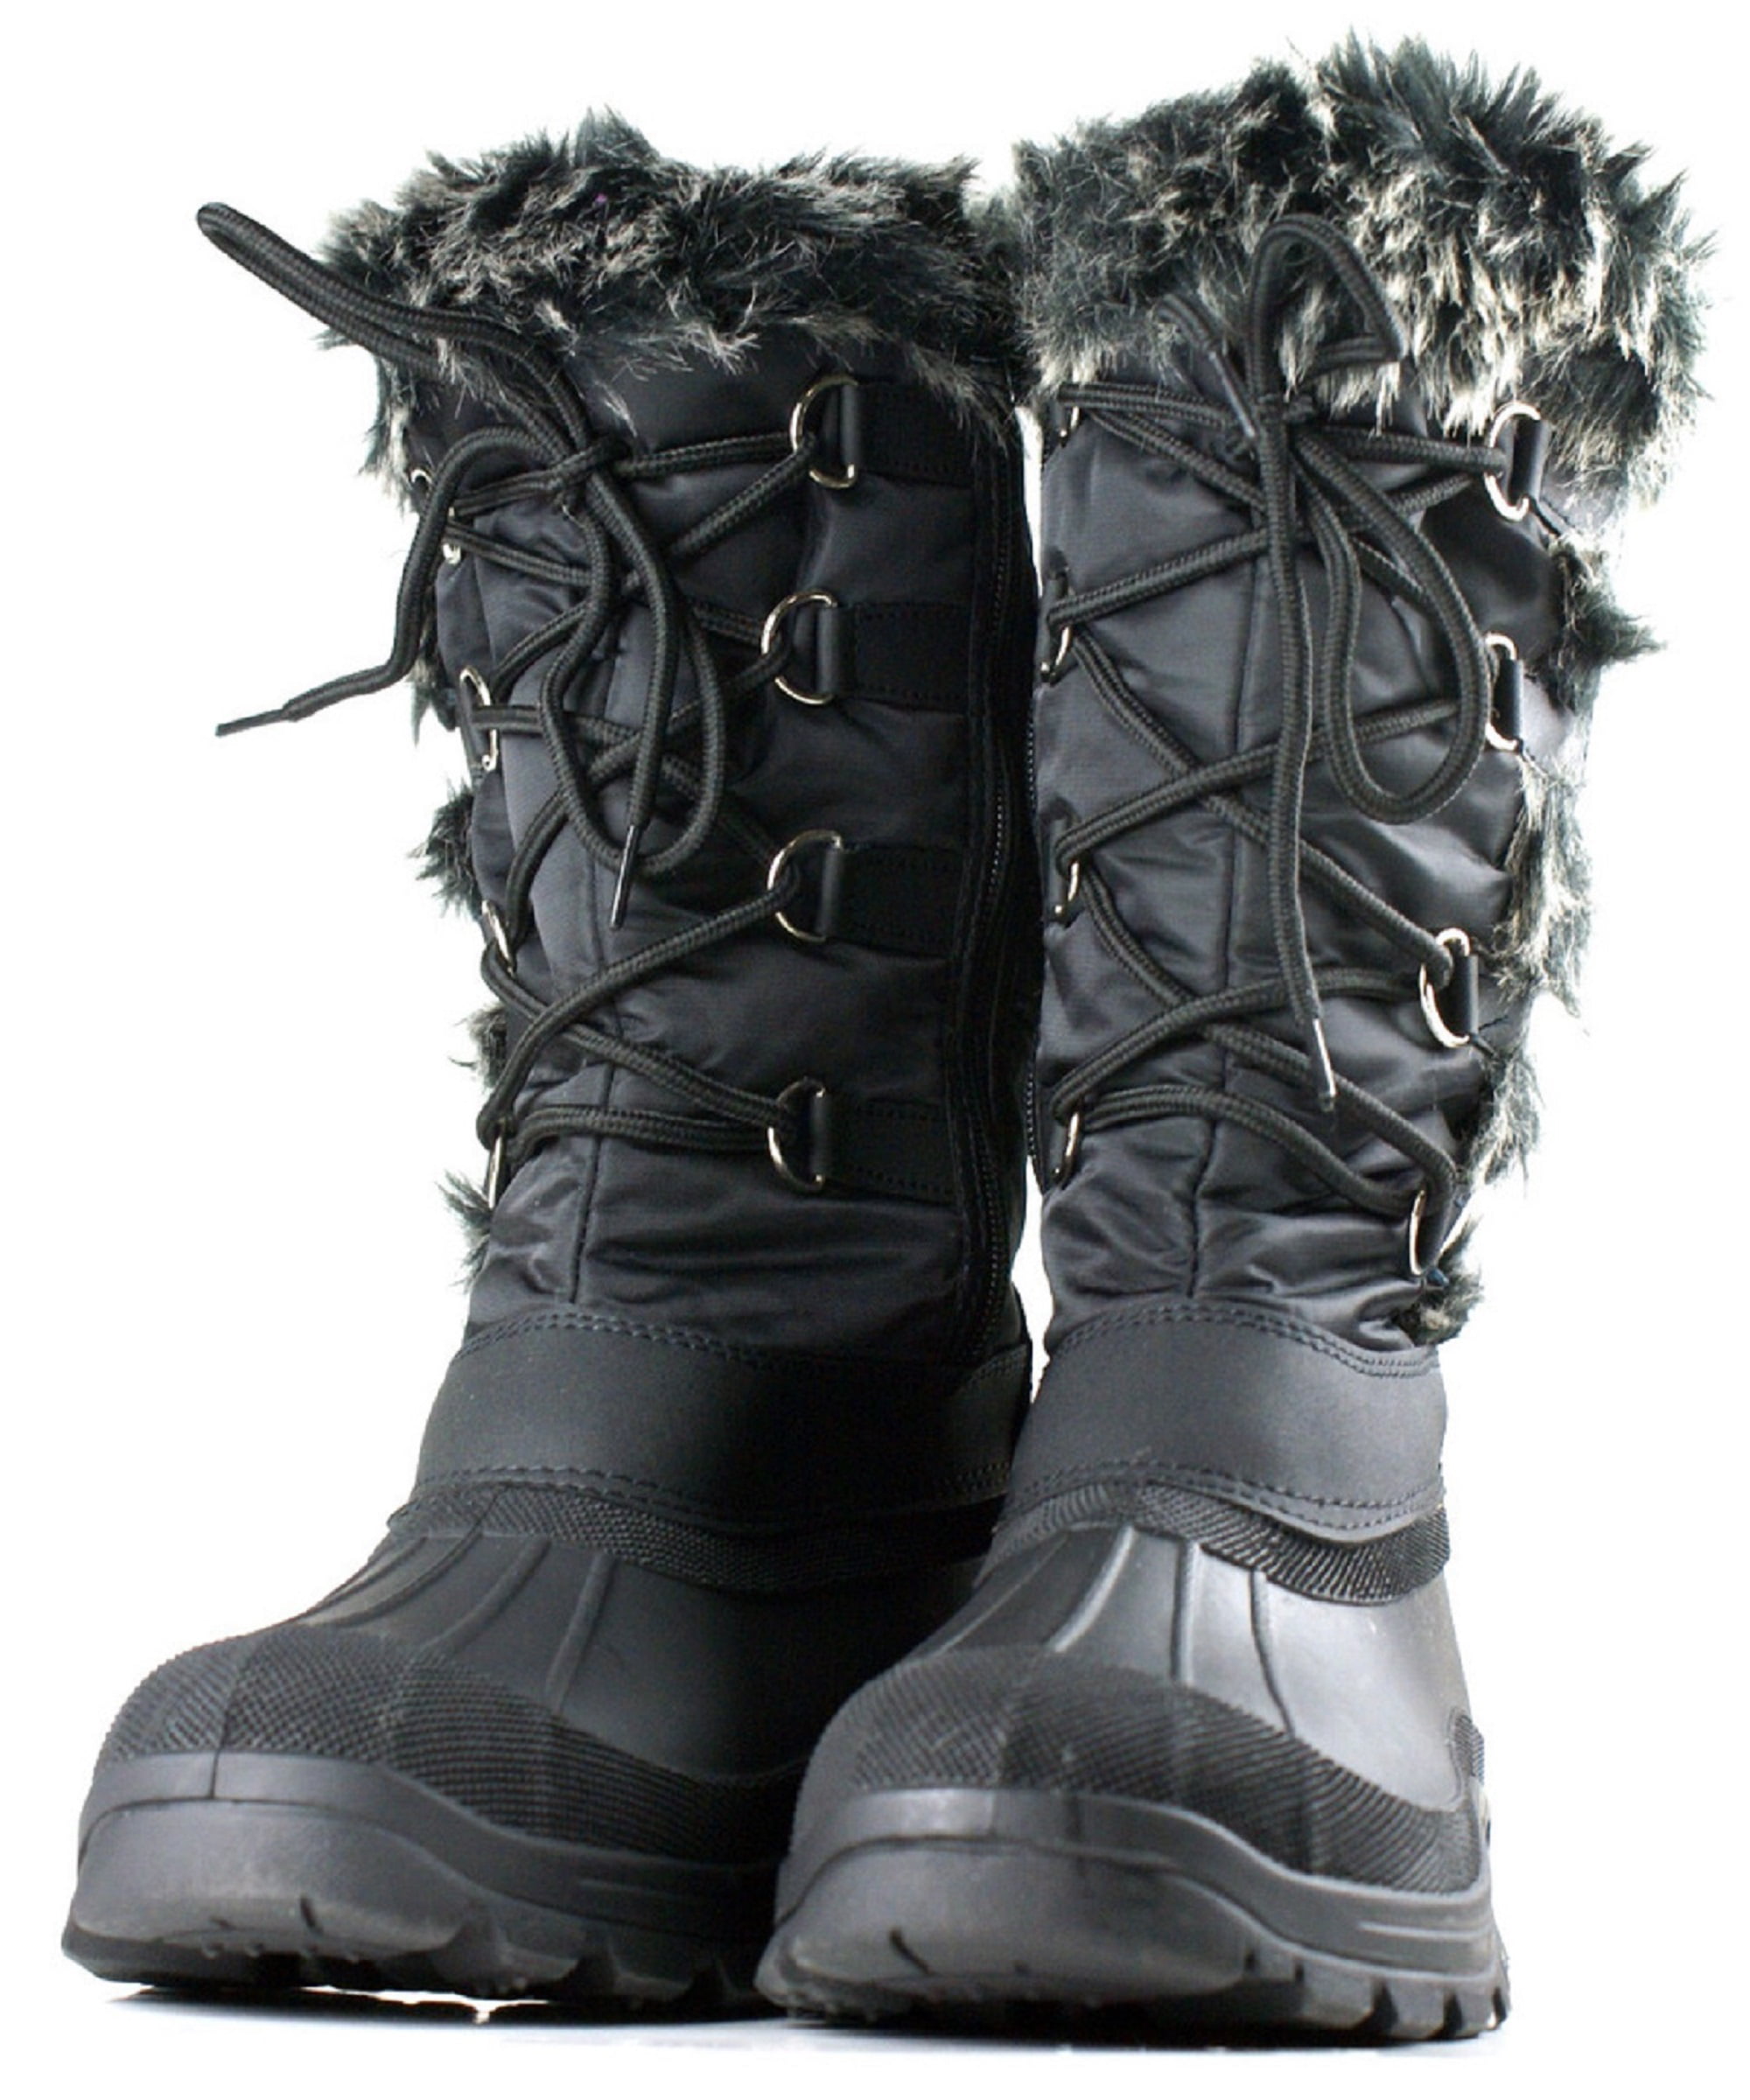 women's winter boots at walmart